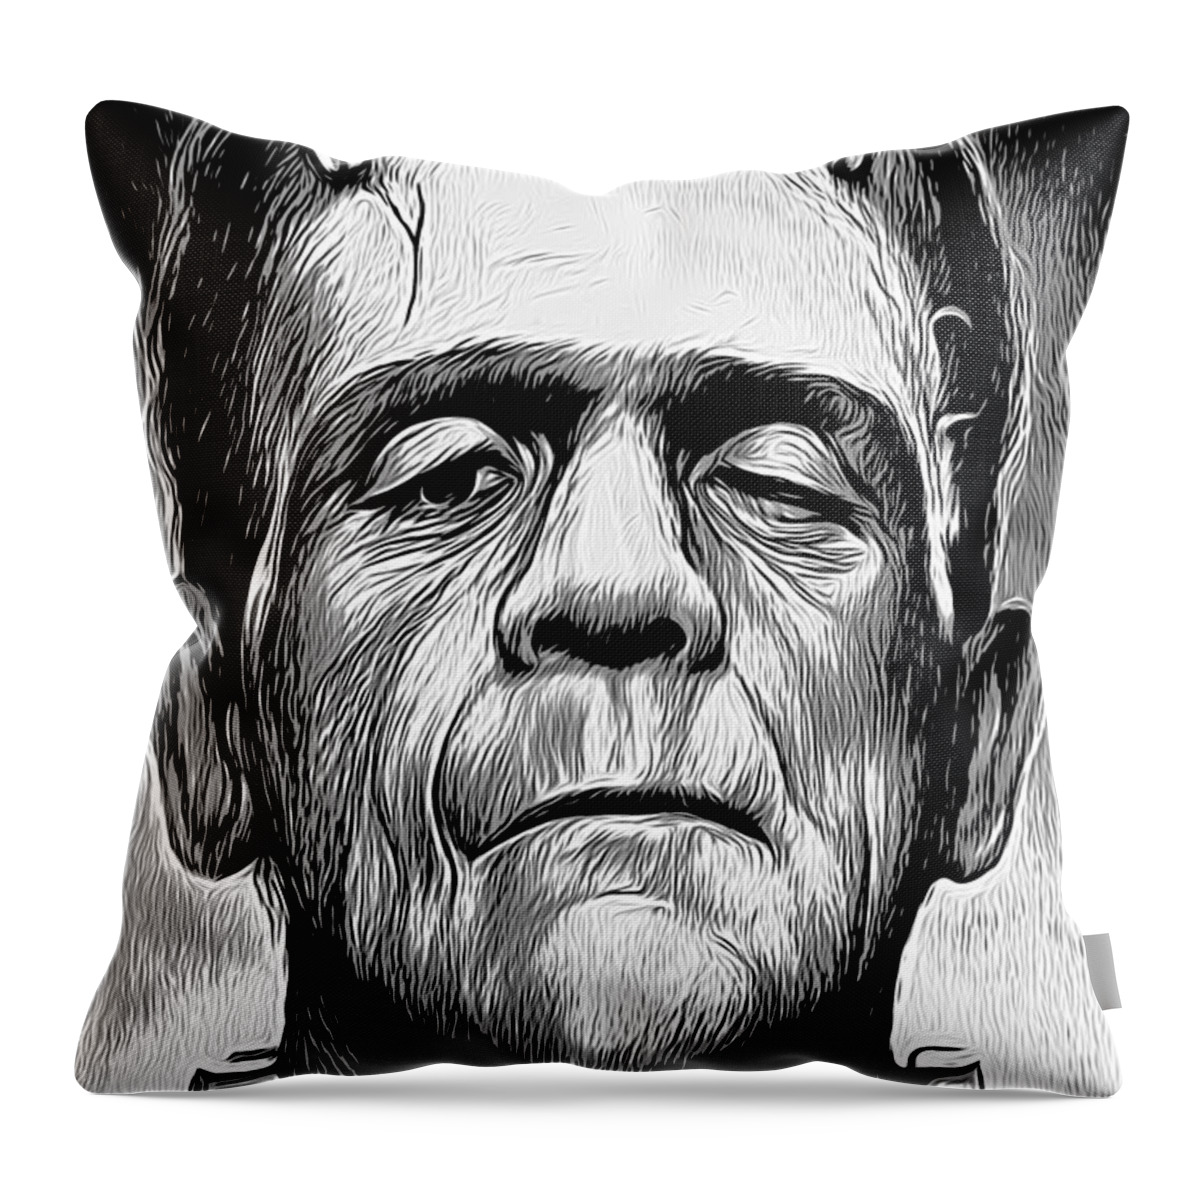 Frankenstein Throw Pillow featuring the digital art Frankenstein #1 by Greg Joens